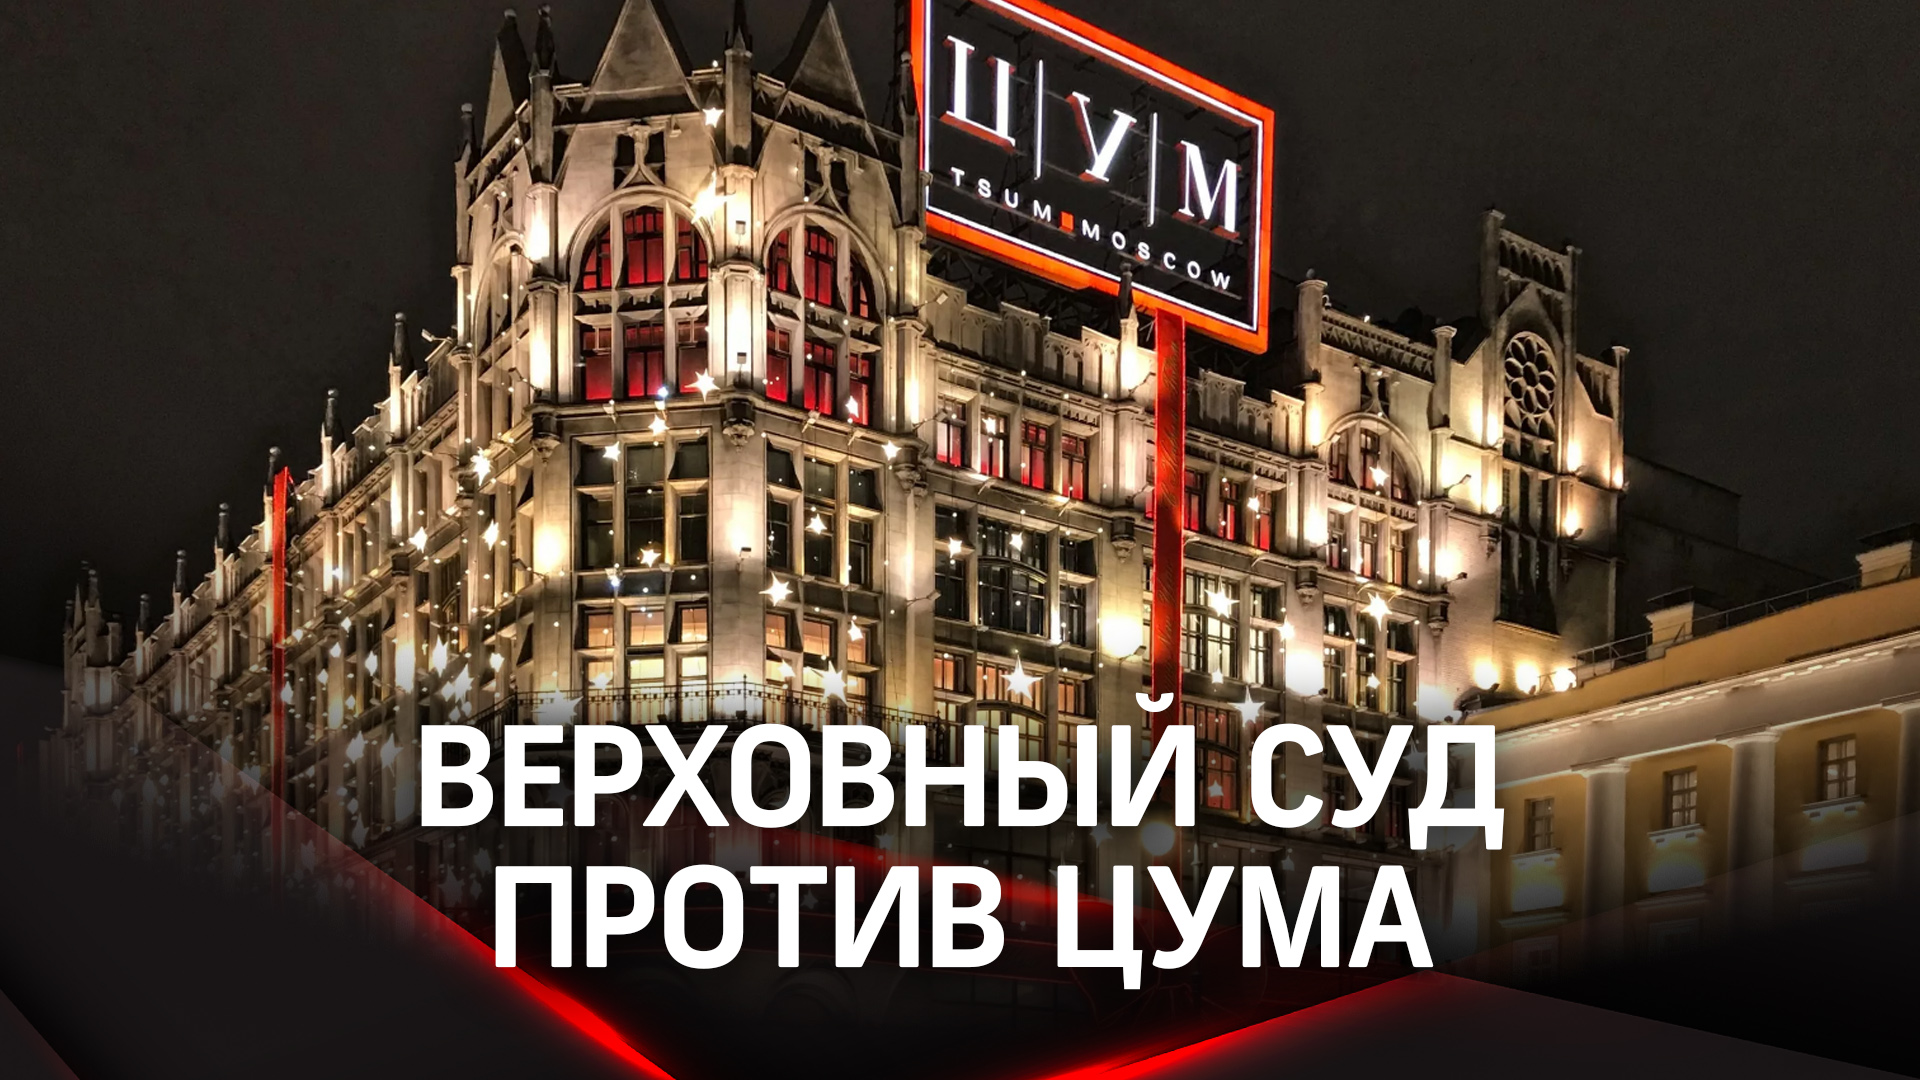 Верховный суд против ЦУМа: покупатель почти бесплатно получил вещи стоимостью 2 млн. рублей